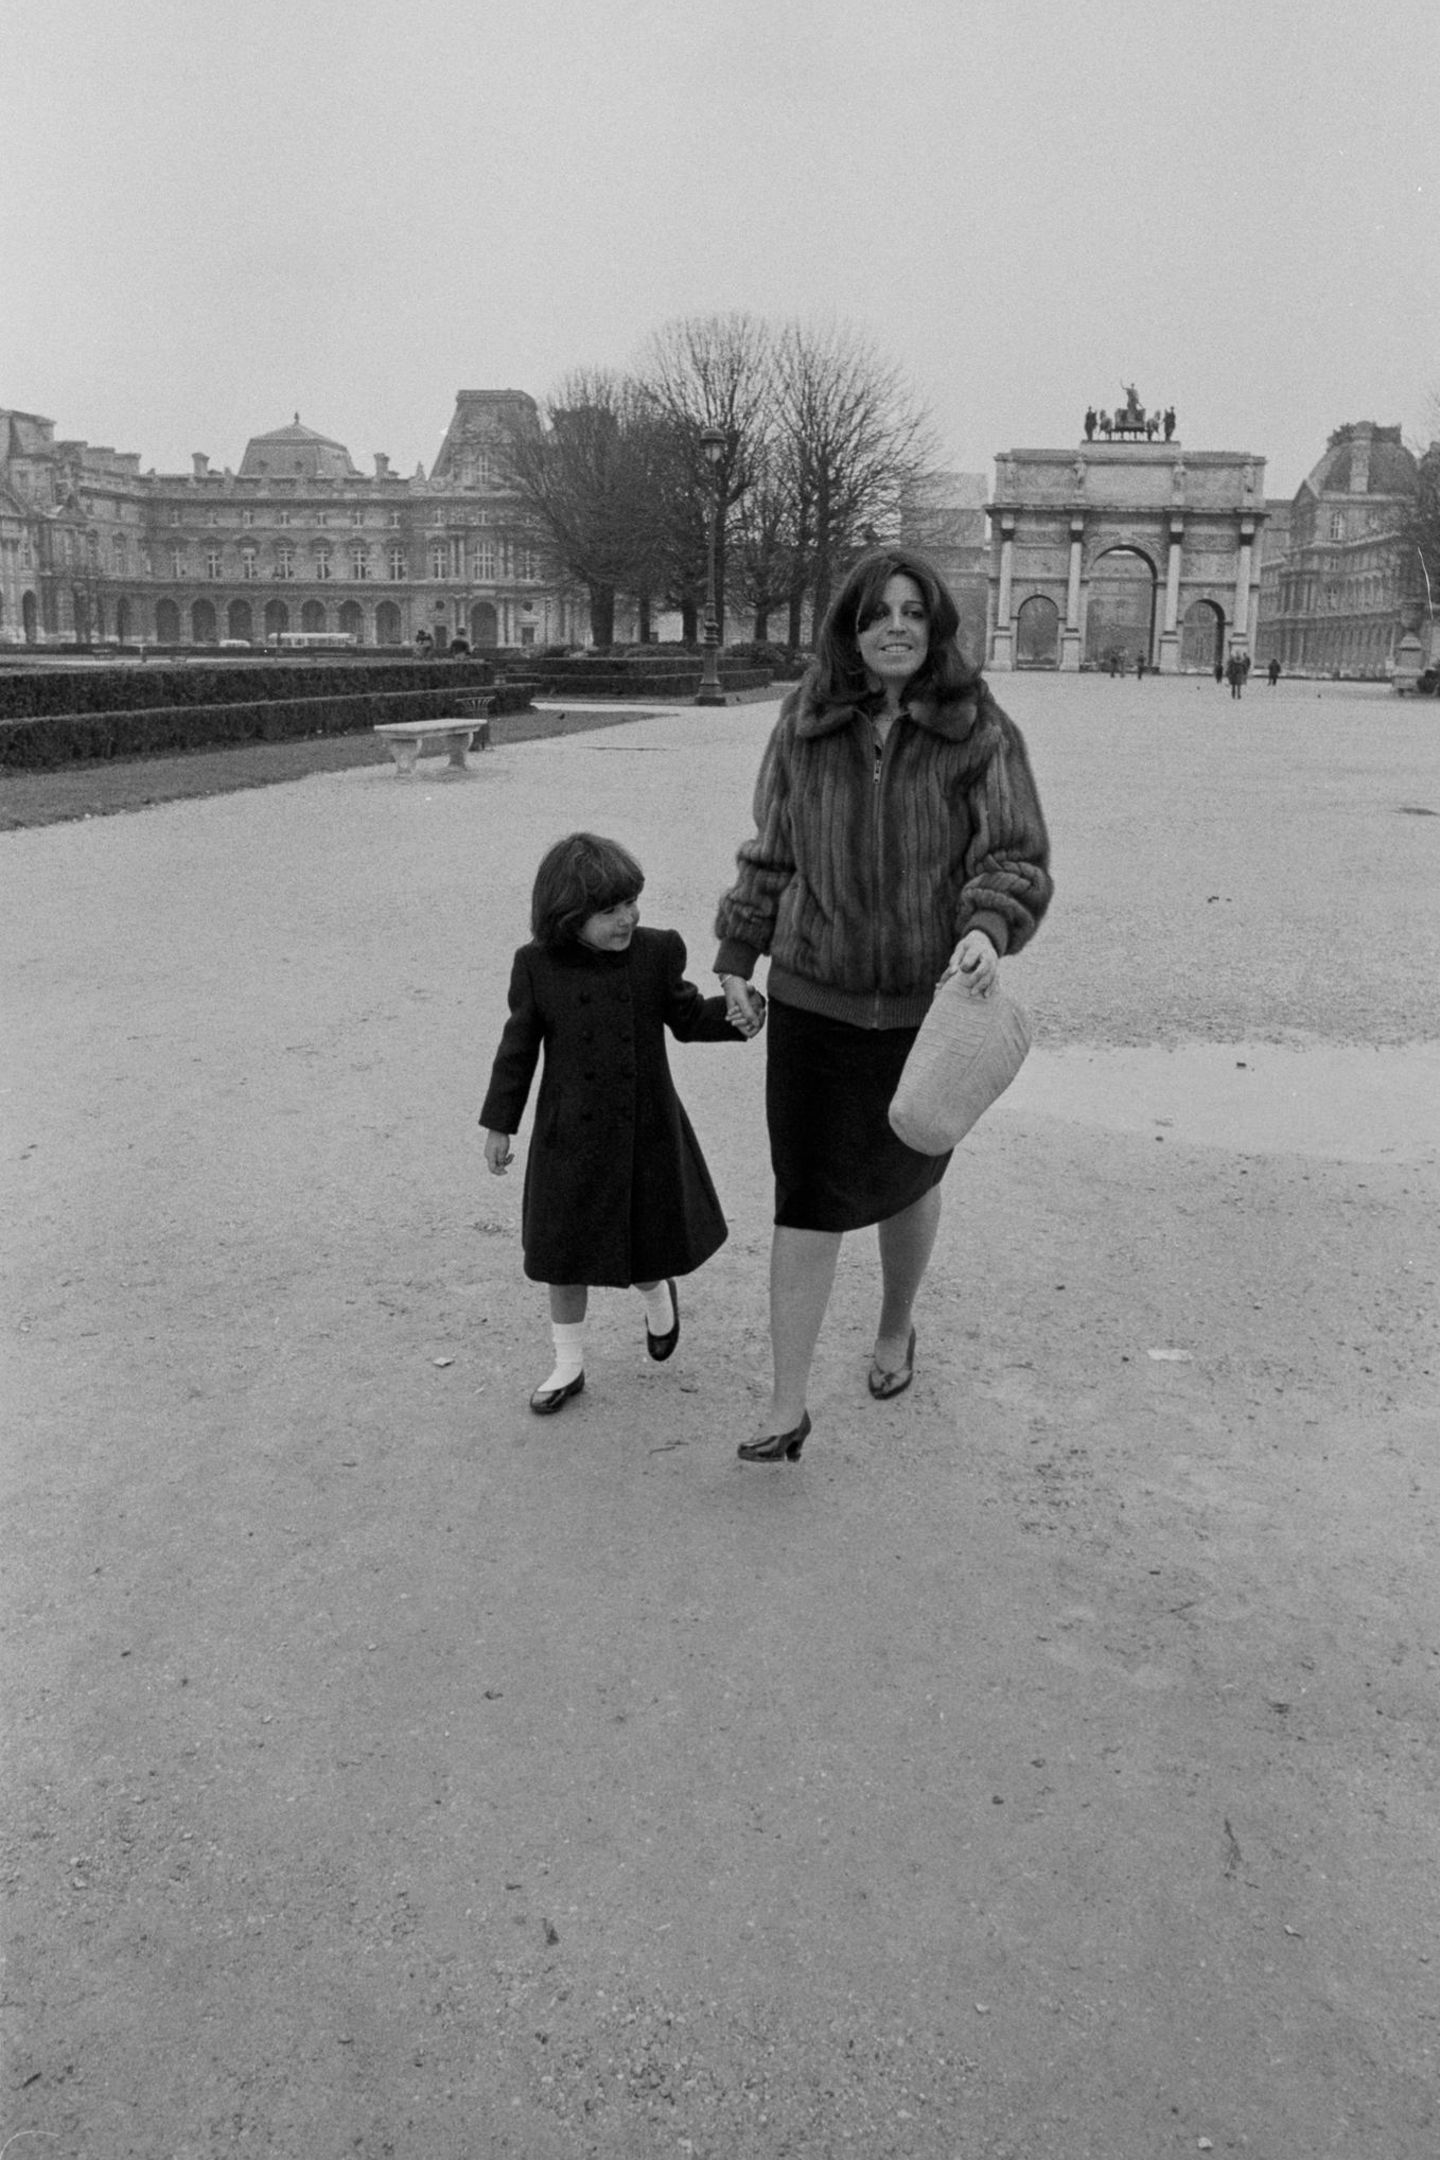 Athina Hélène Onassis de Miranda kommt 1985 in Neuilly-sur-Seine bei Paris zur Welt. Ihre Mutter Christina Onassis leidet Zeit ihres Lebens an Depressionen und verstirbt im Alter von nur 37 Jahren an einem Herzinfarkt. Ihre Tochter Athina, in vierter Ehe mit Thierry Roussel geboren, ist damals gerade drei Jahre alt.